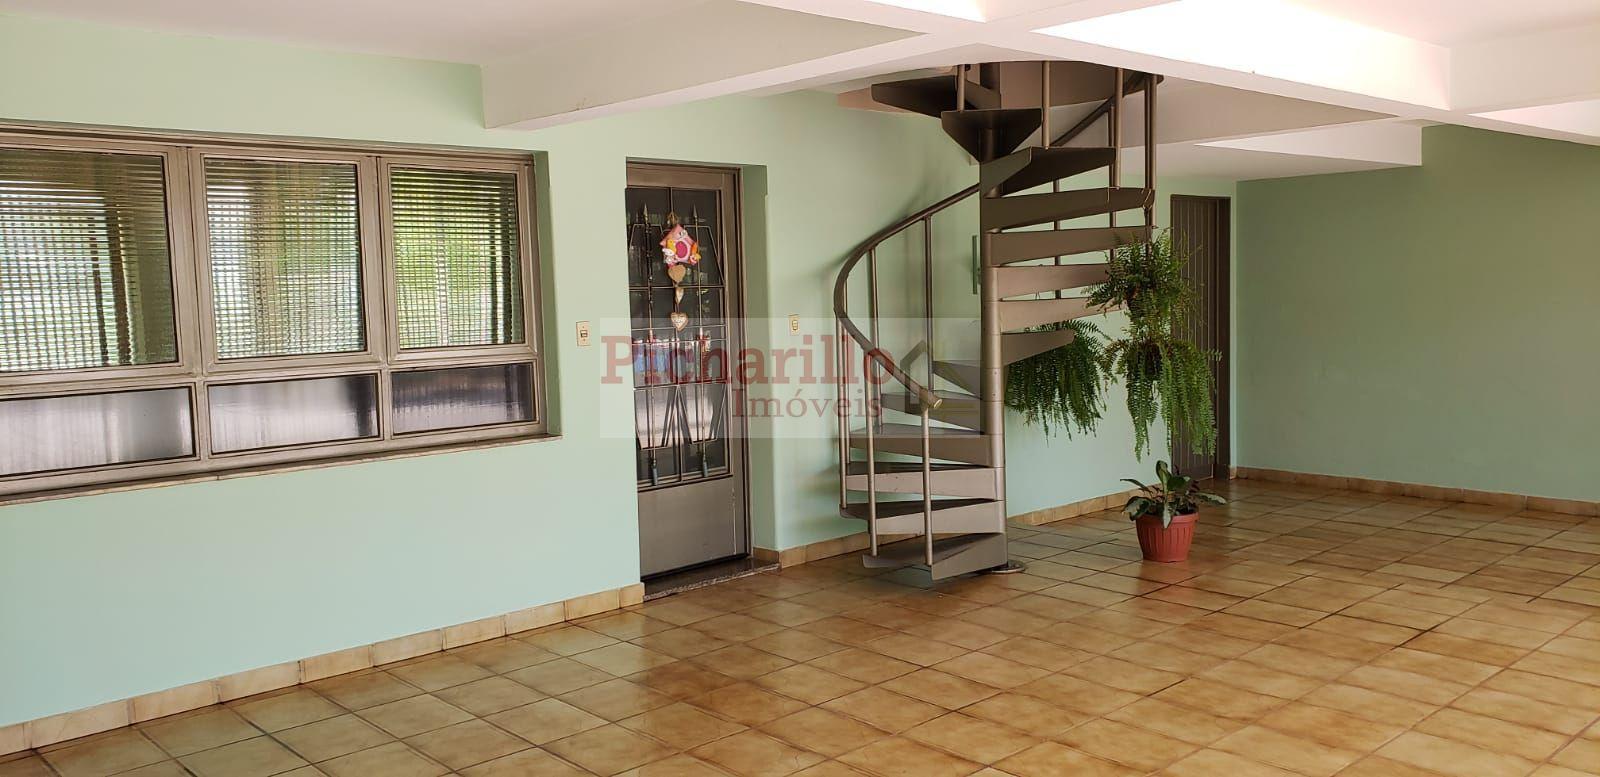 Duas casas à venda com 246 m² -  5 dormitórios - Centro - São Carlos/SP